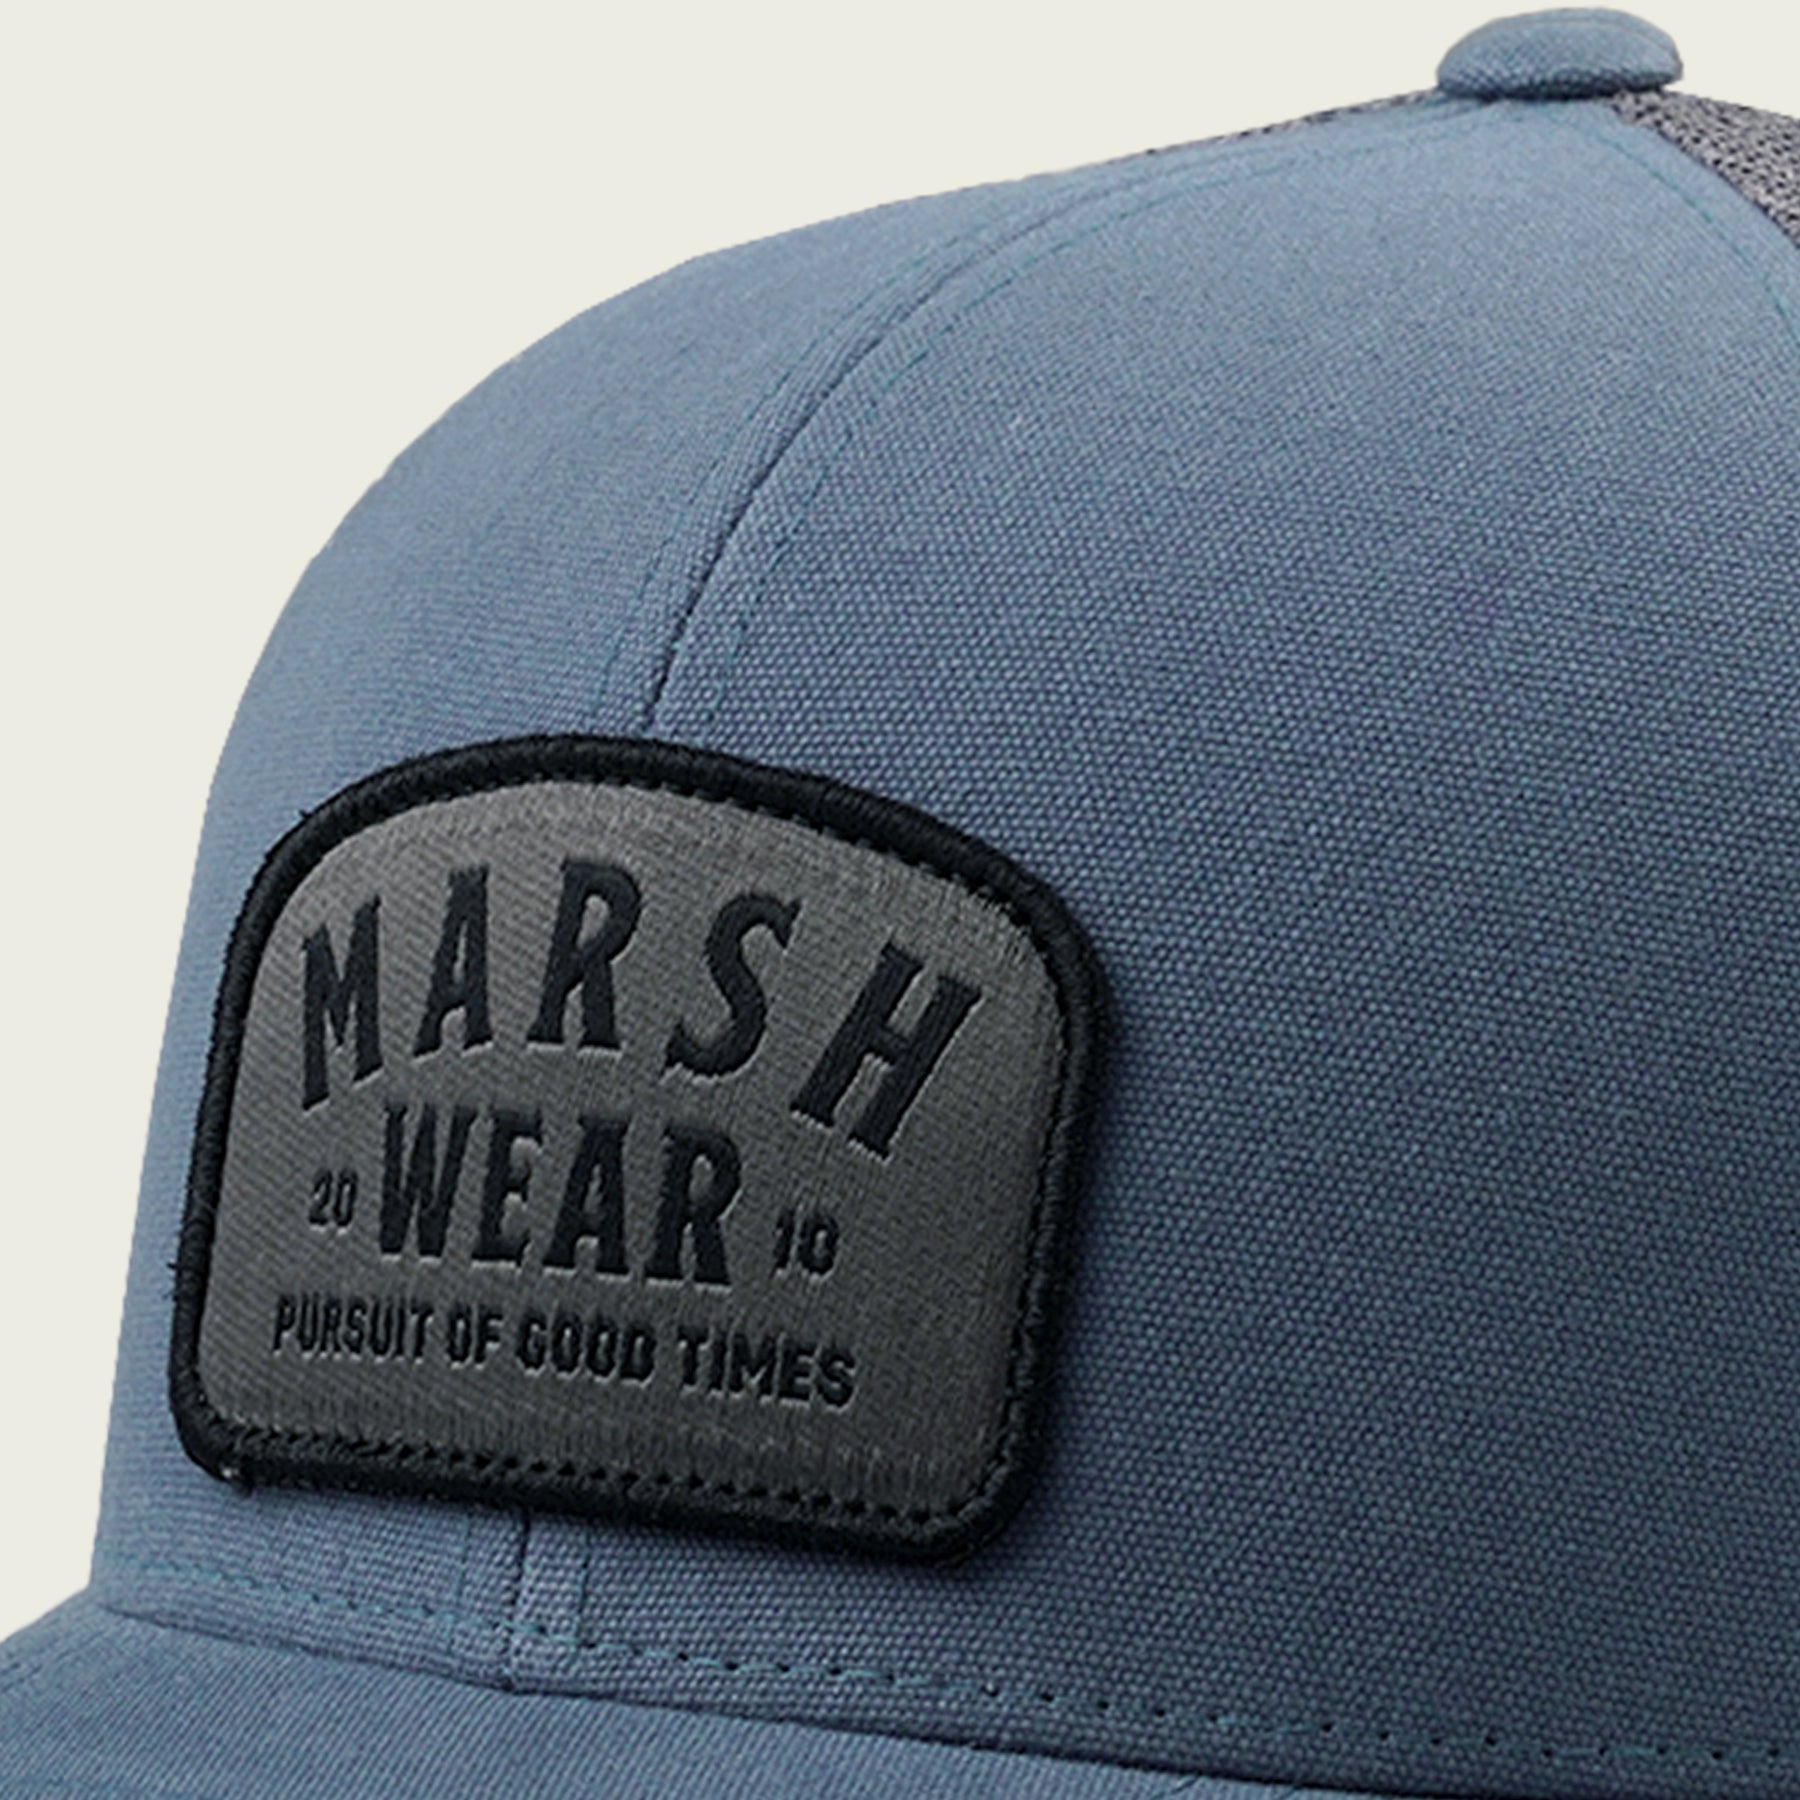 Marsh Wear Alton Trucker Hat - Dogfish Tackle & Marine